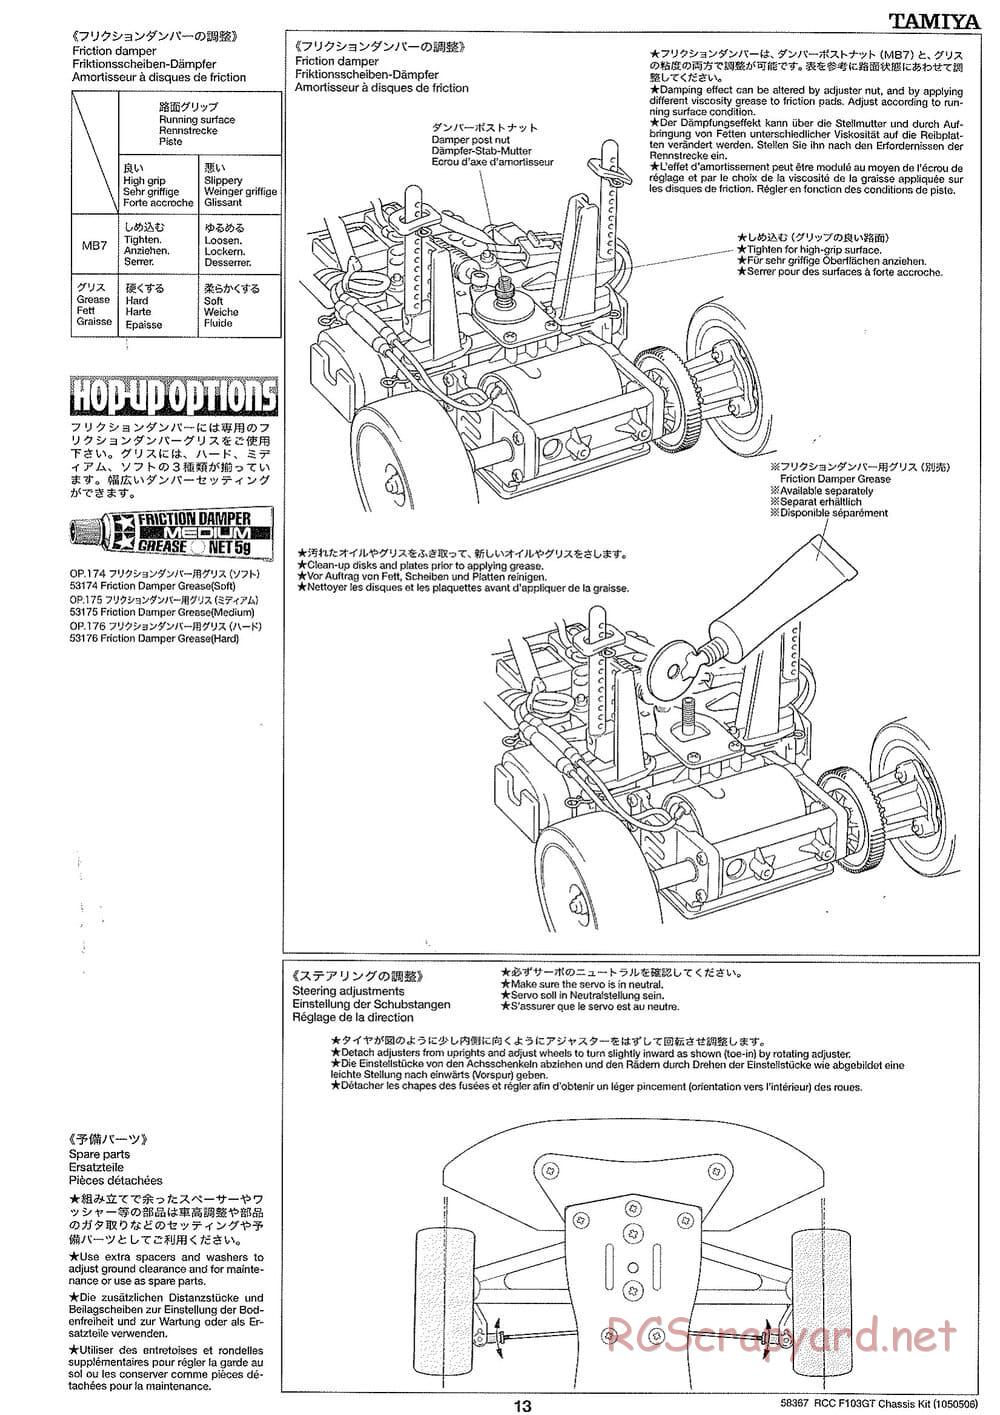 Tamiya - F103GT Chassis Kit - Manual - Page 13